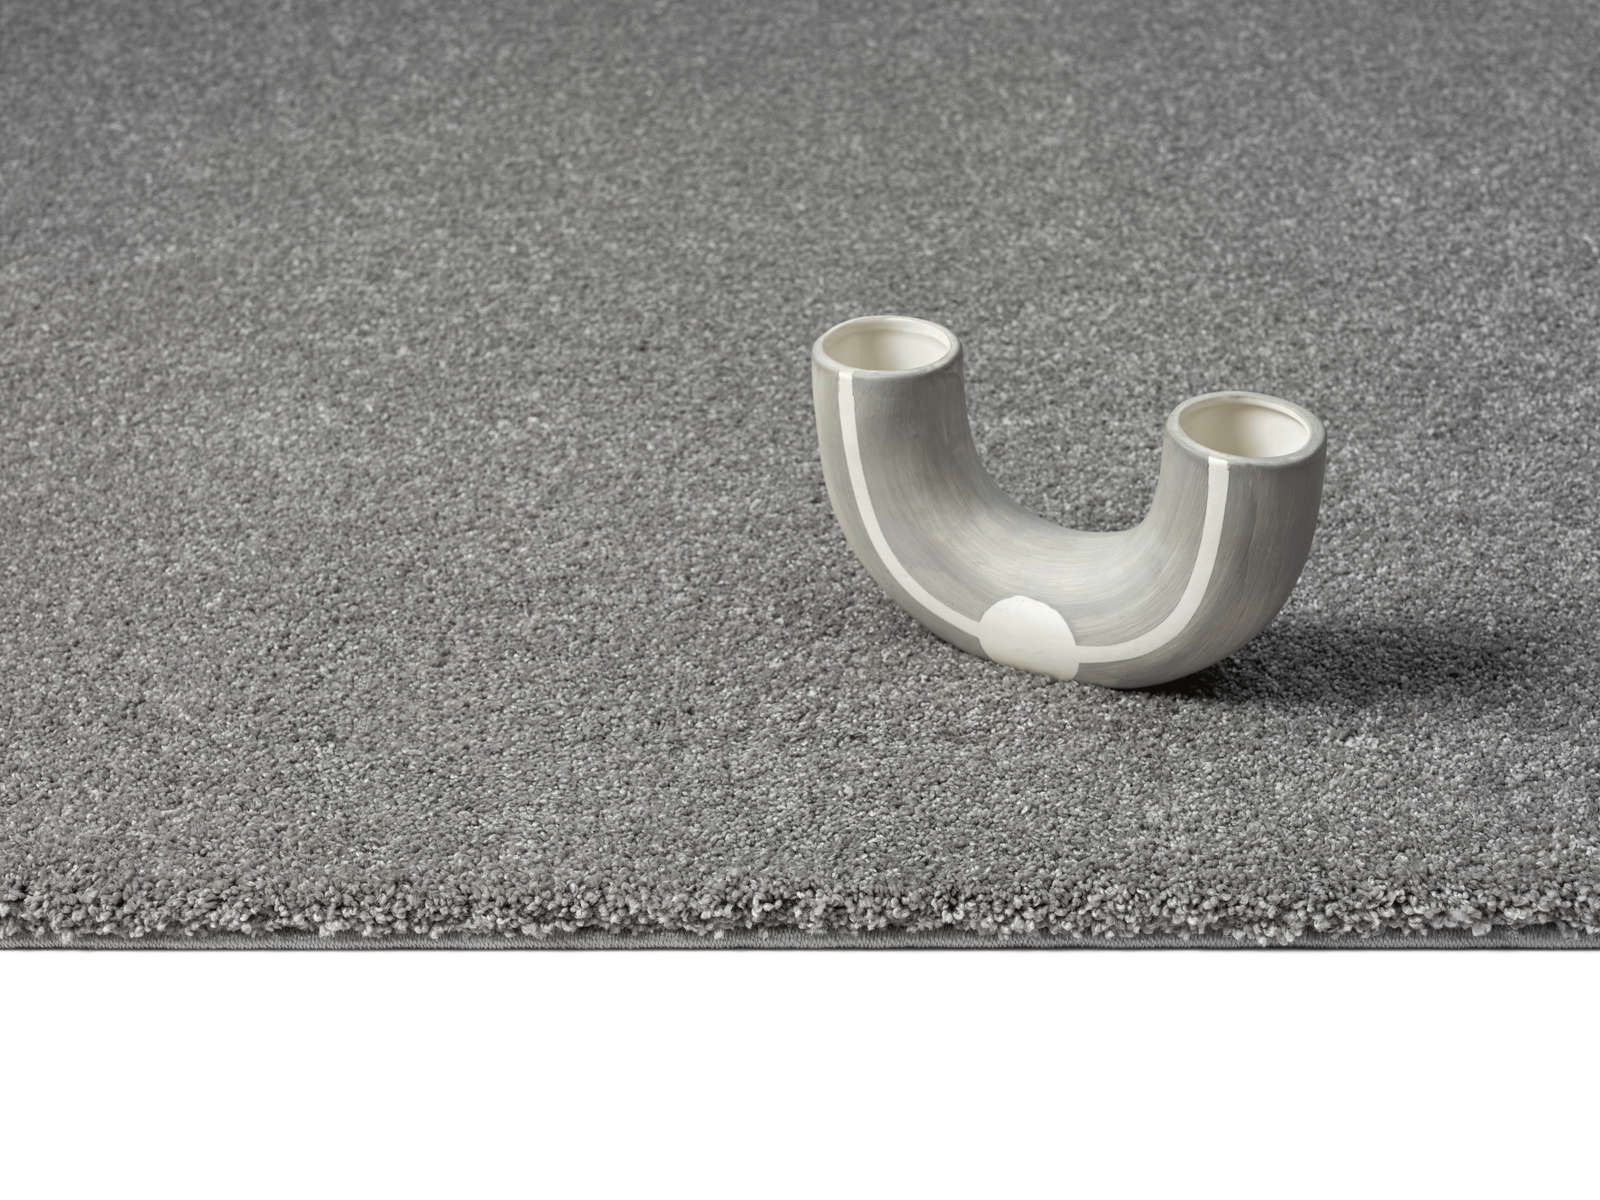             Flauschiger Kurzflor Teppich in Grau – 150 x 80 cm
        